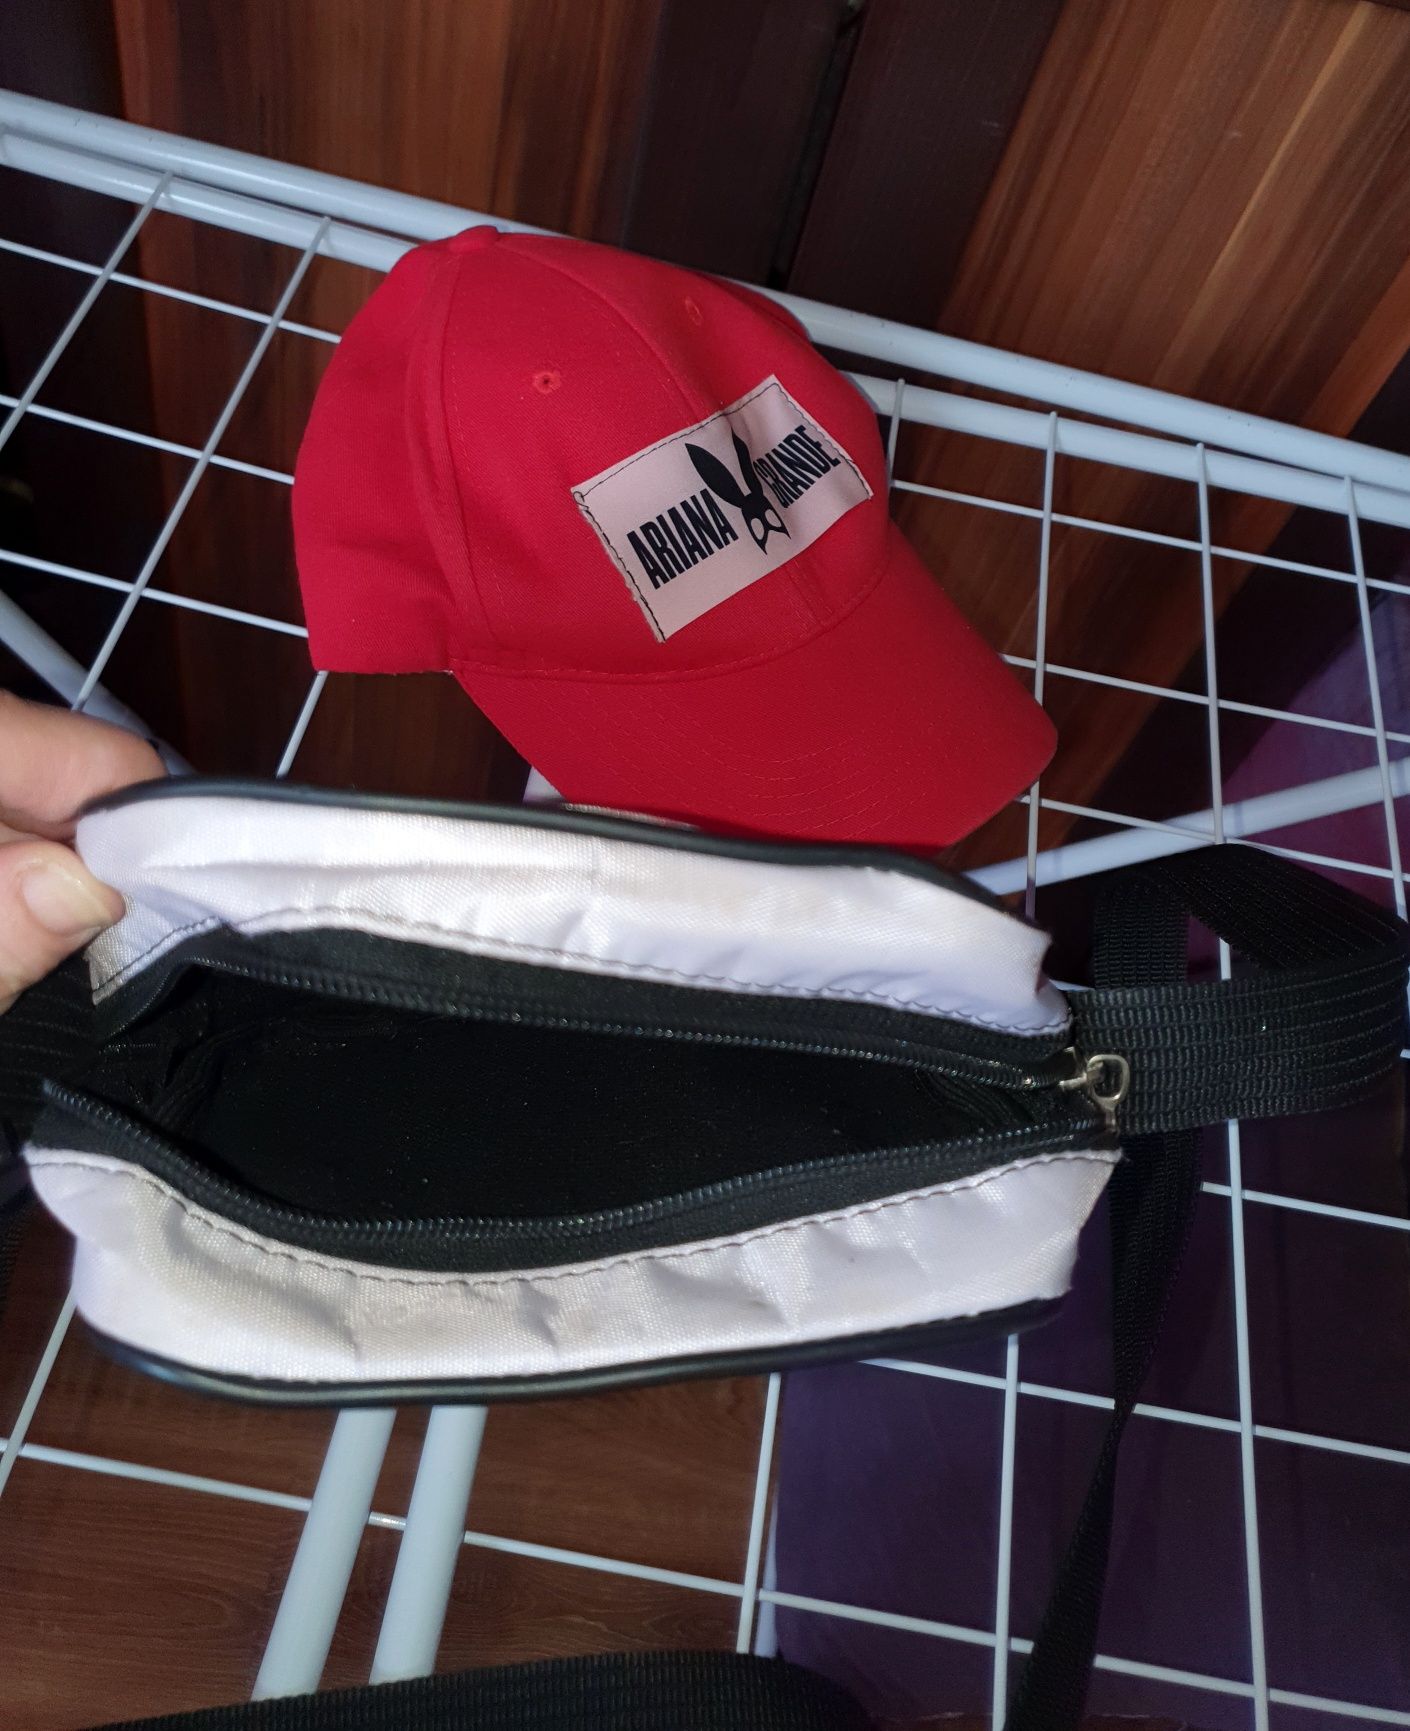 Komplet czapka z daszkiem,torebka Ariana Grande + dwie poszewki na pod